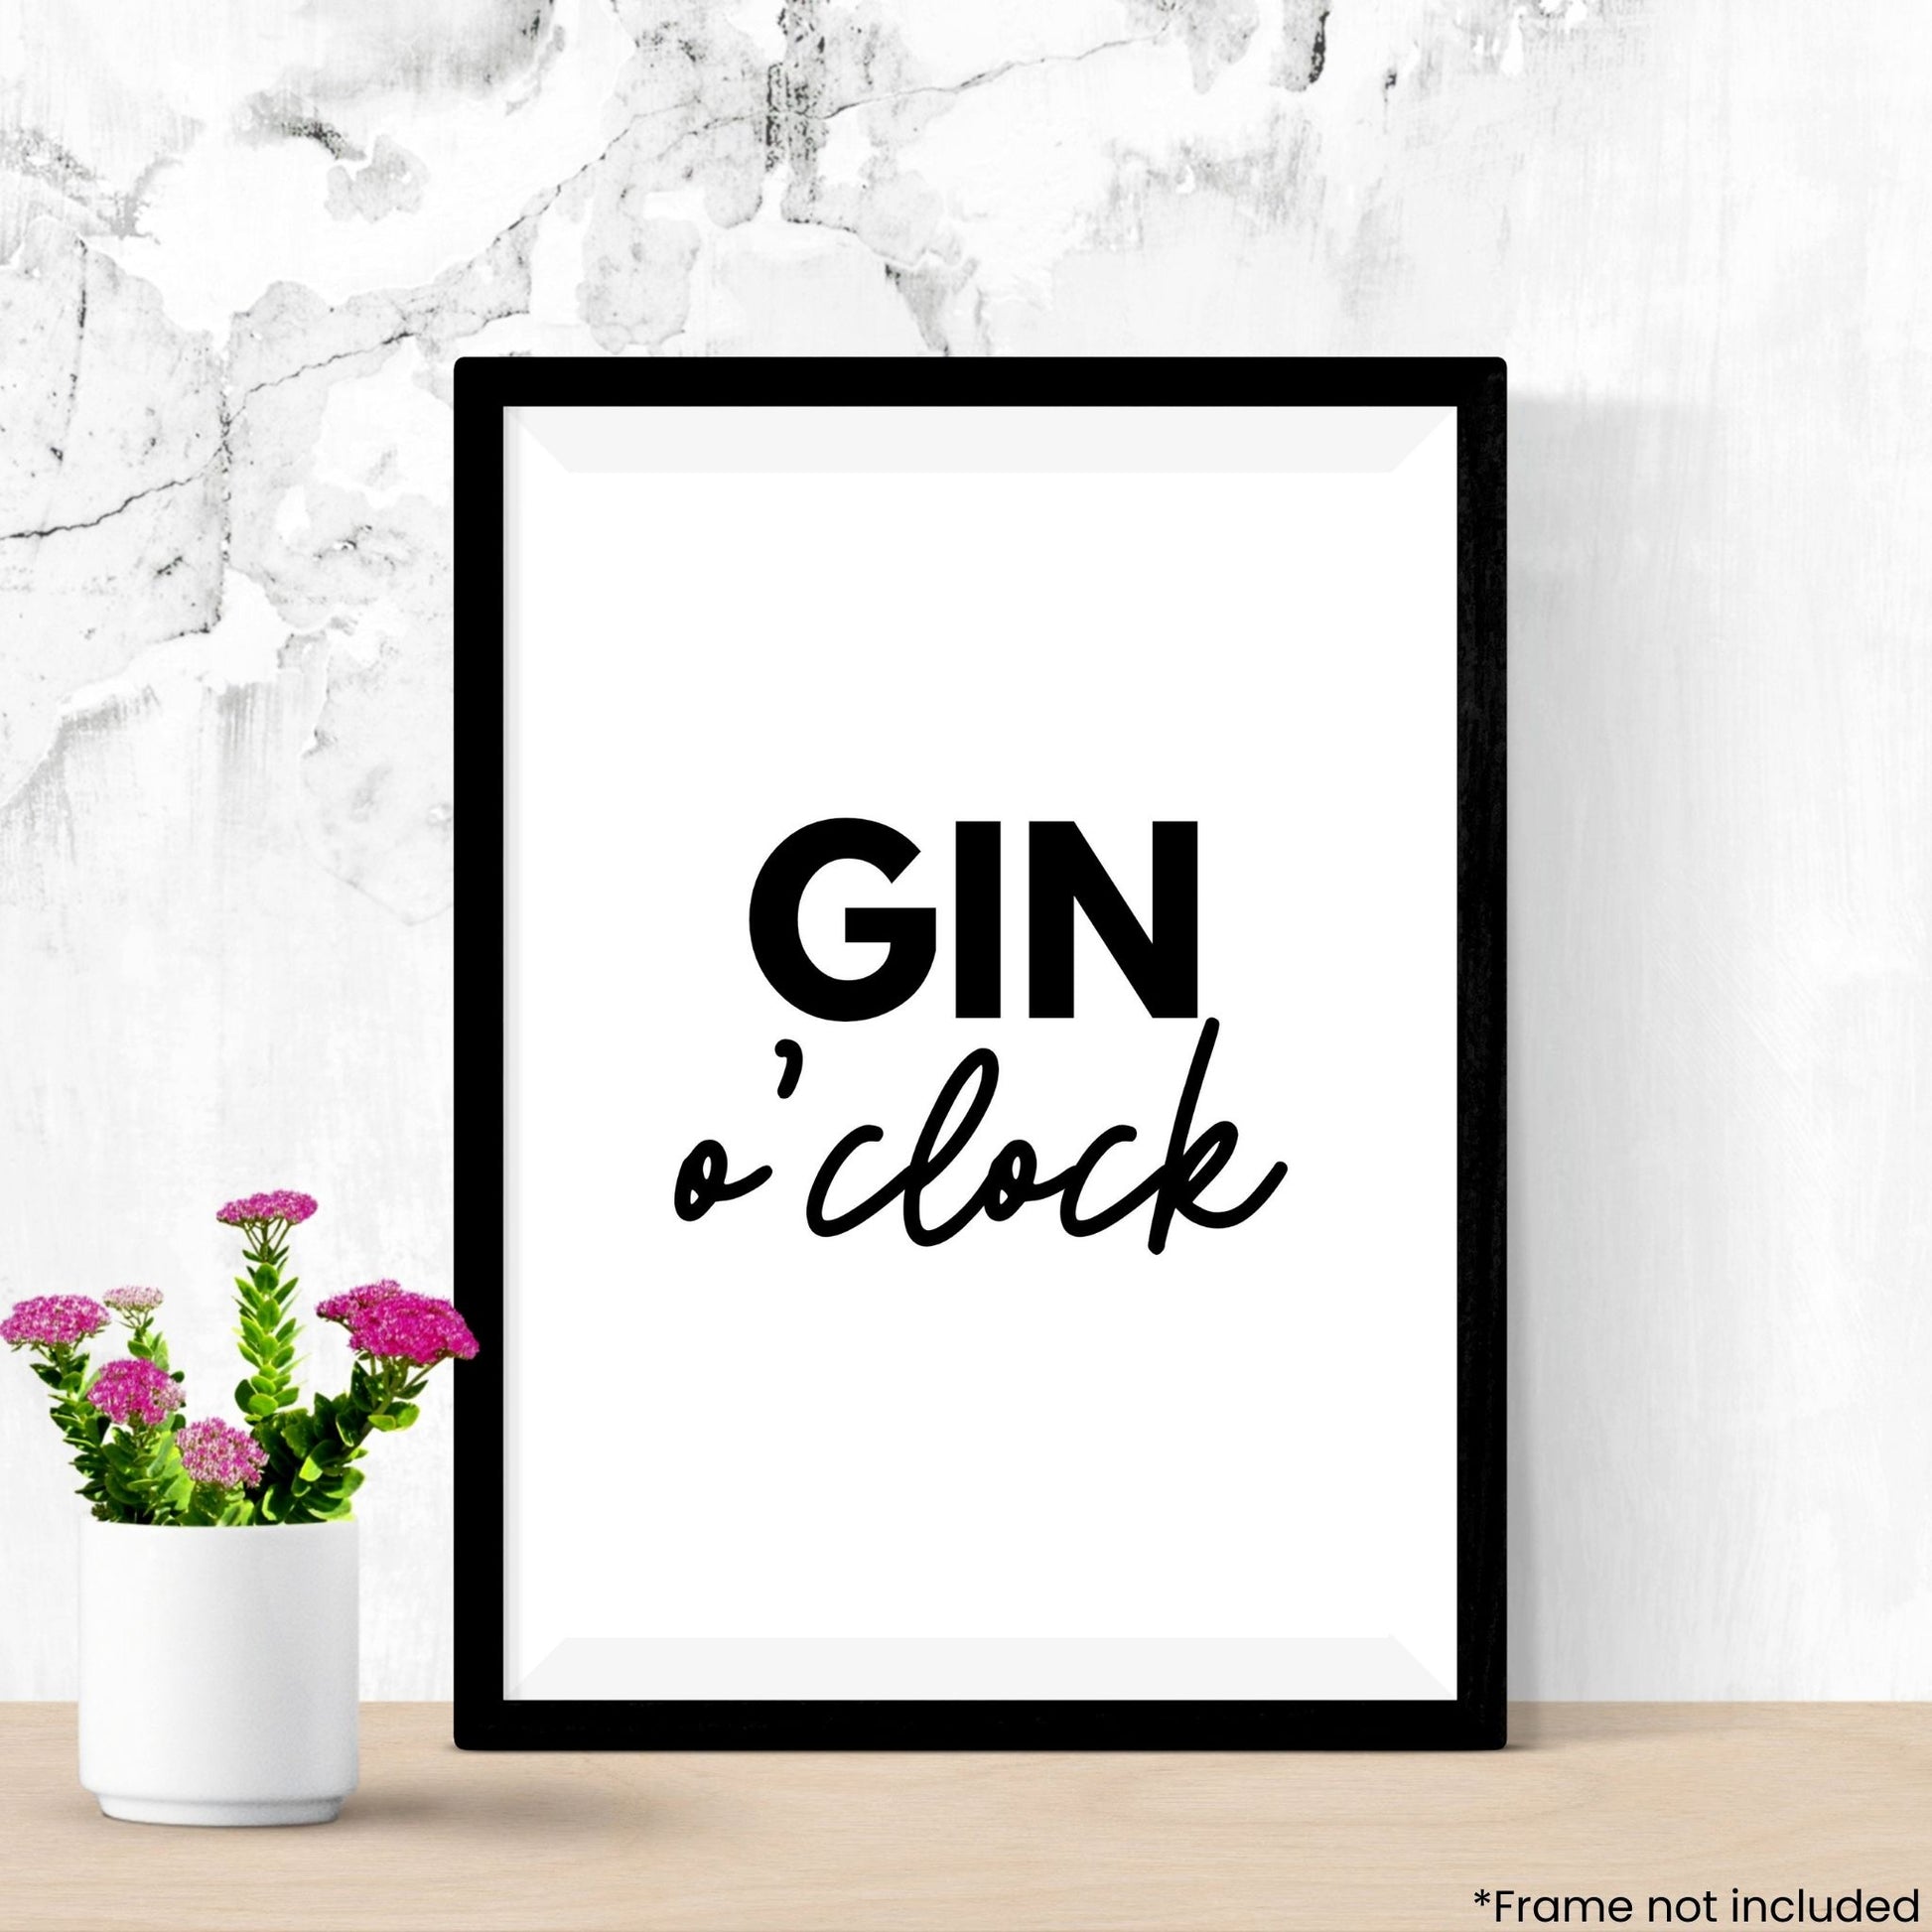 gin-oclock in frame